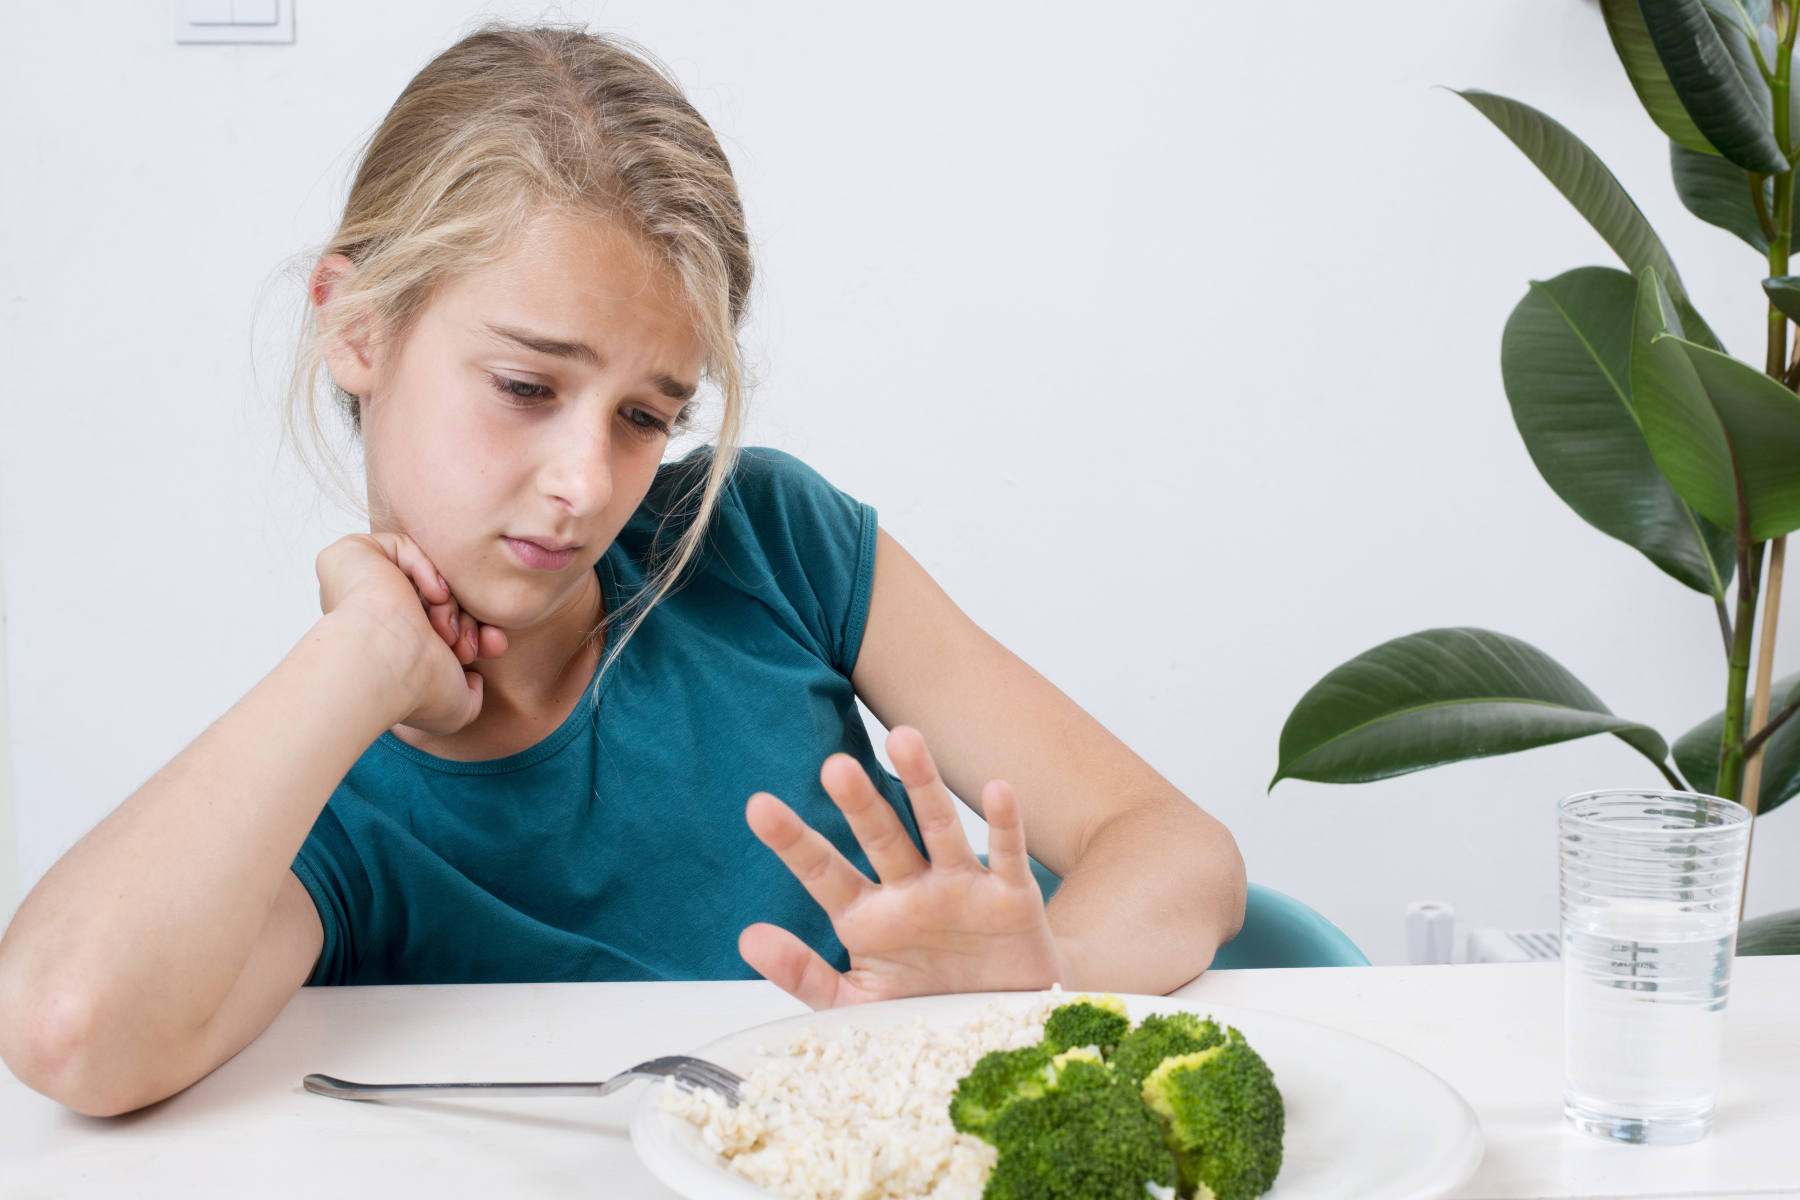 Ψυχική υγεία: Ποιες είναι οι κύριες διατροφικές διαταραχές;